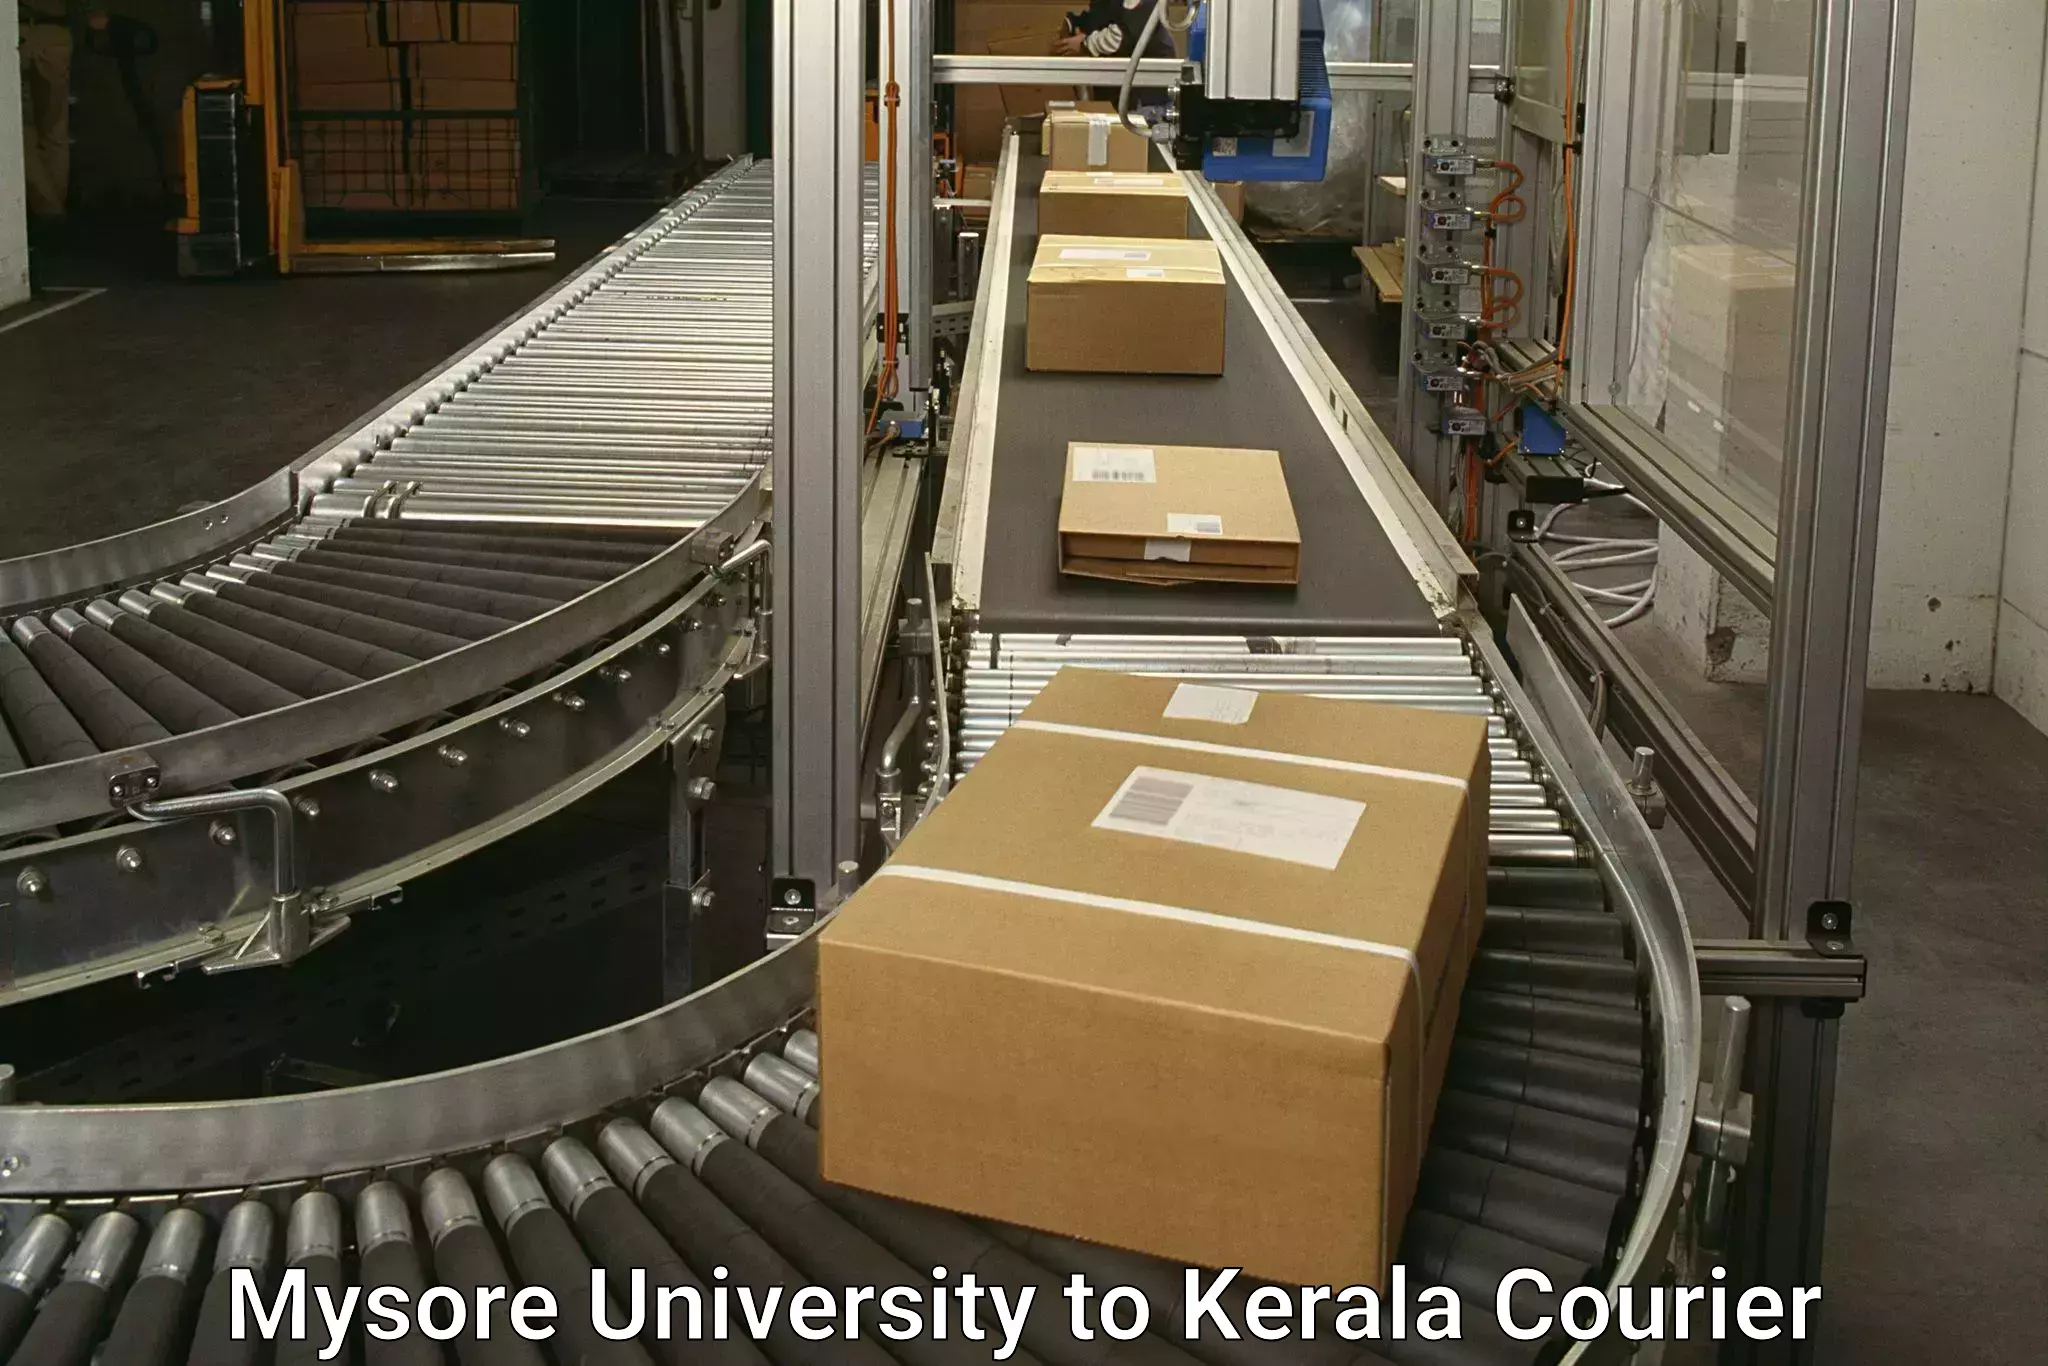 Rural area delivery in Mysore University to Tiruvalla